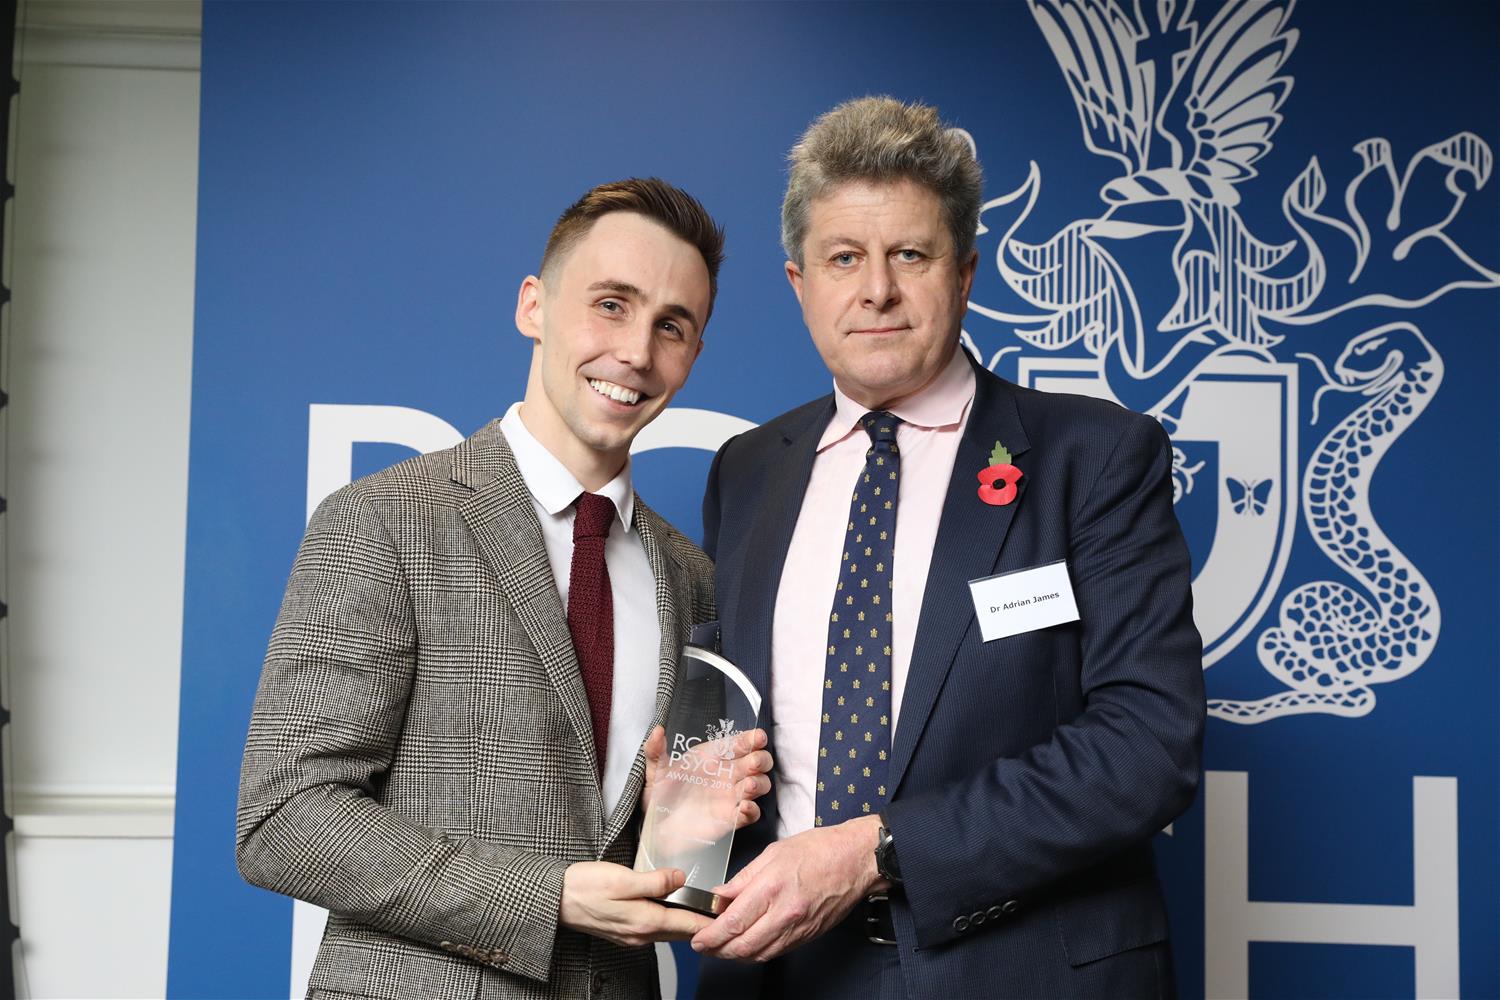 Thomas Hewson receives his award